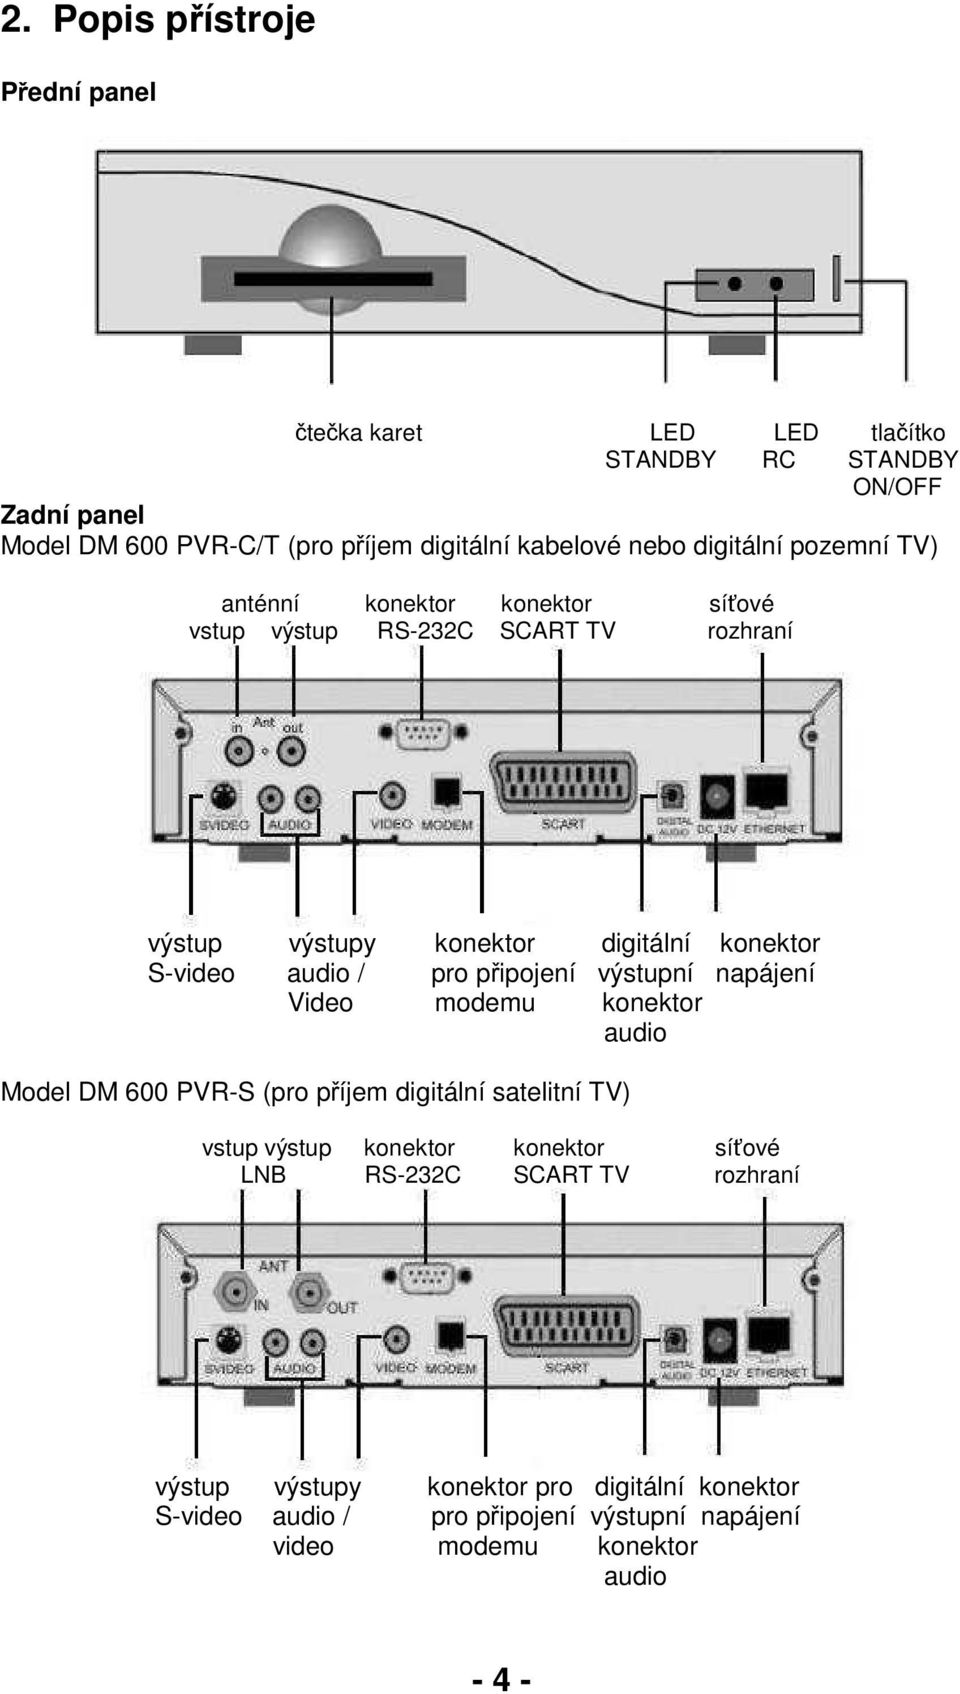 / pro připojení výstupní napájení Video modemu konektor audio Model DM 600 PVR-S (pro příjem digitální satelitní TV) vstup výstup konektor konektor síťové